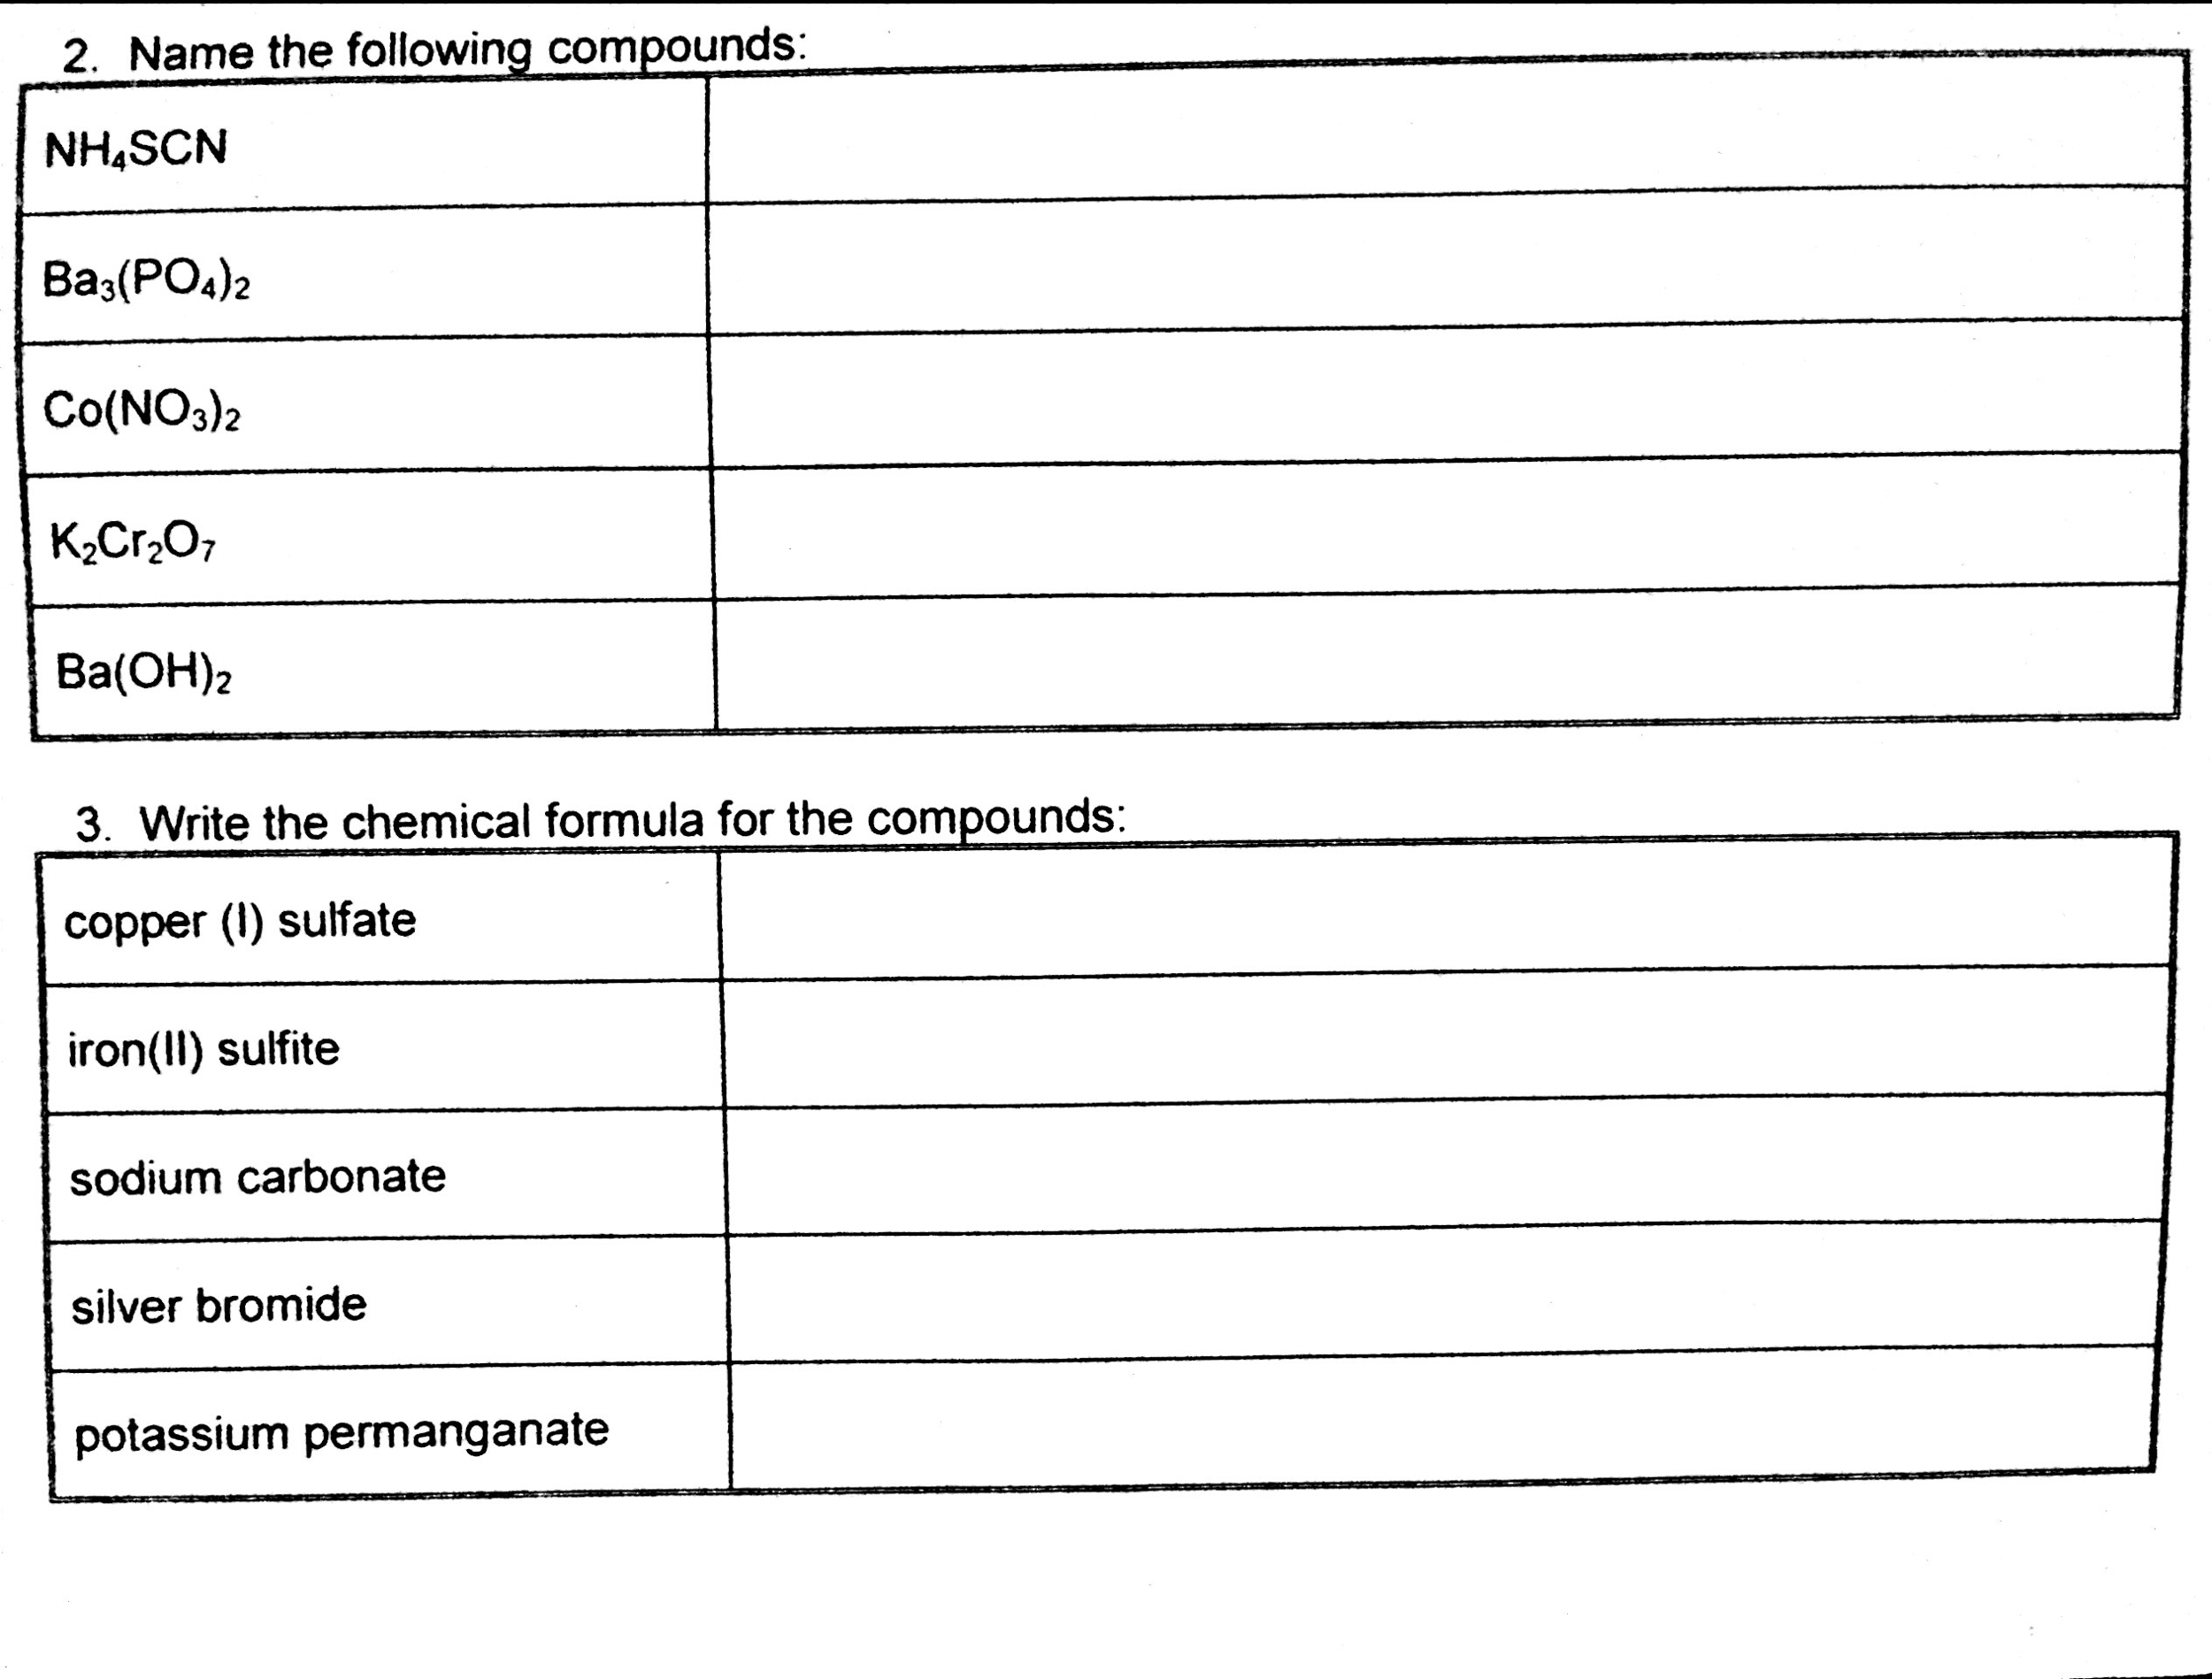 Write a possible formula for the copper sulfate ammonia compound